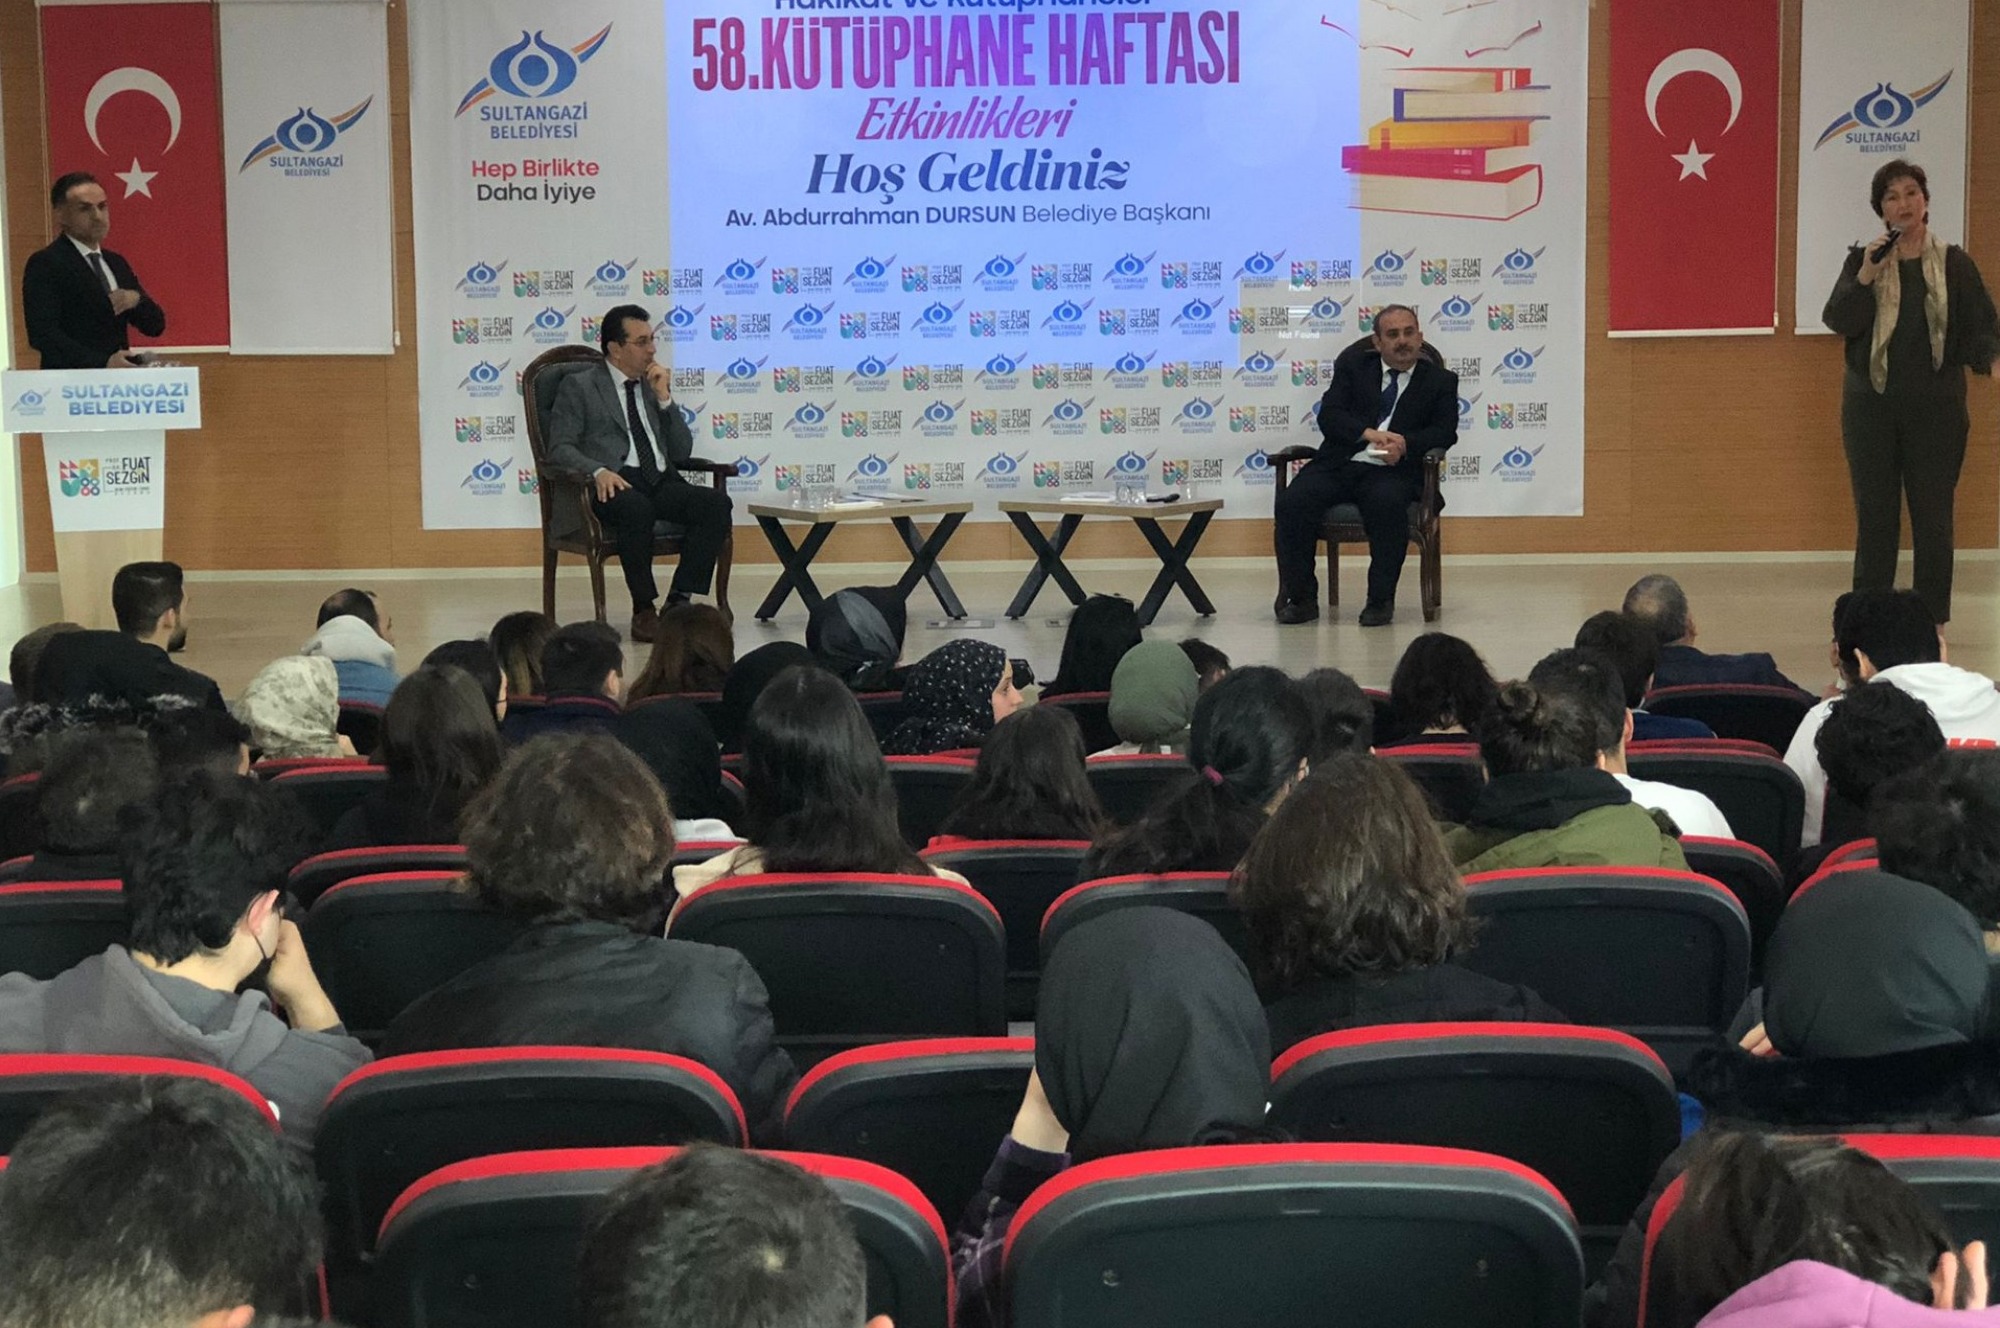 Sultangazi'de Kütüphane Haftası Başladı